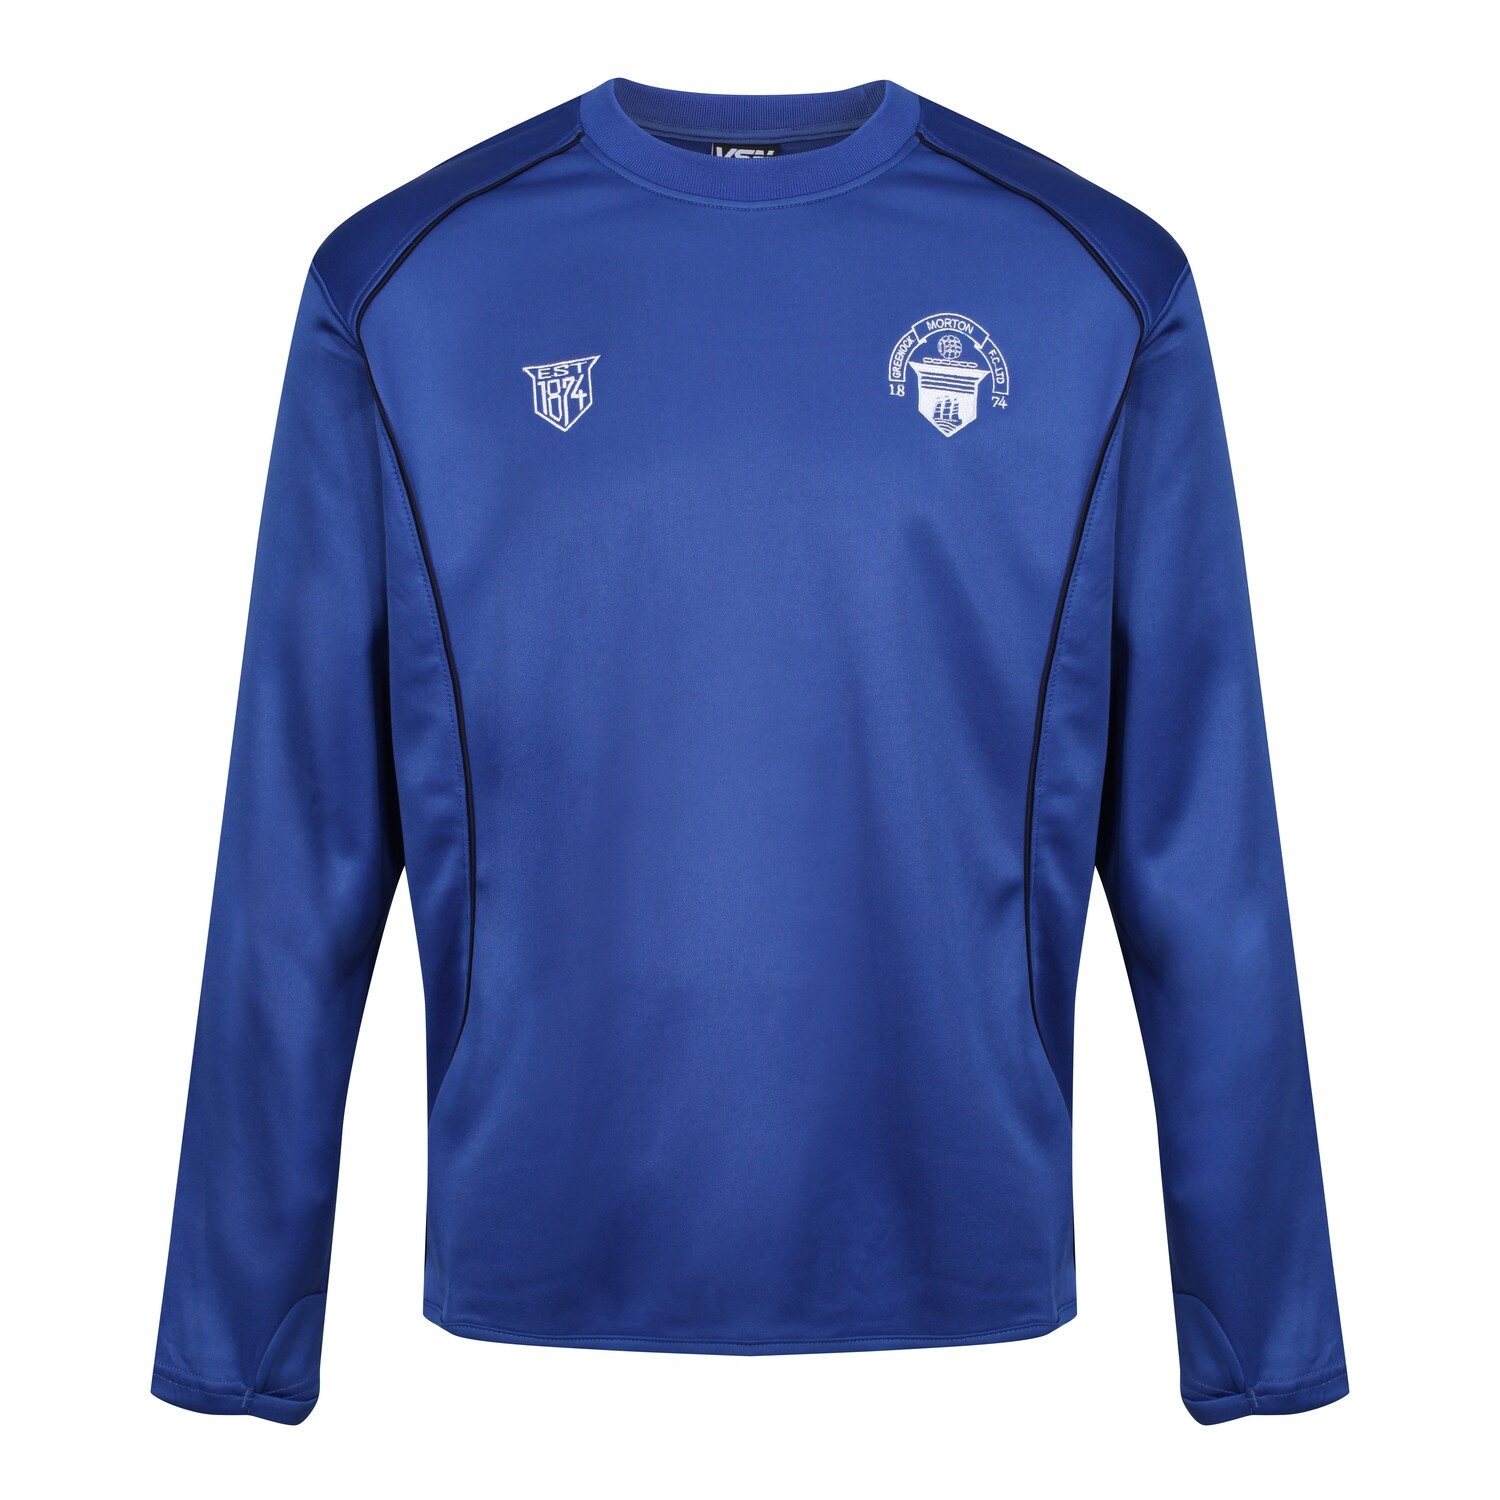 NEW Morton Training Sweatshirt (as worn by the Morton 1st Team - Season 2021-22)